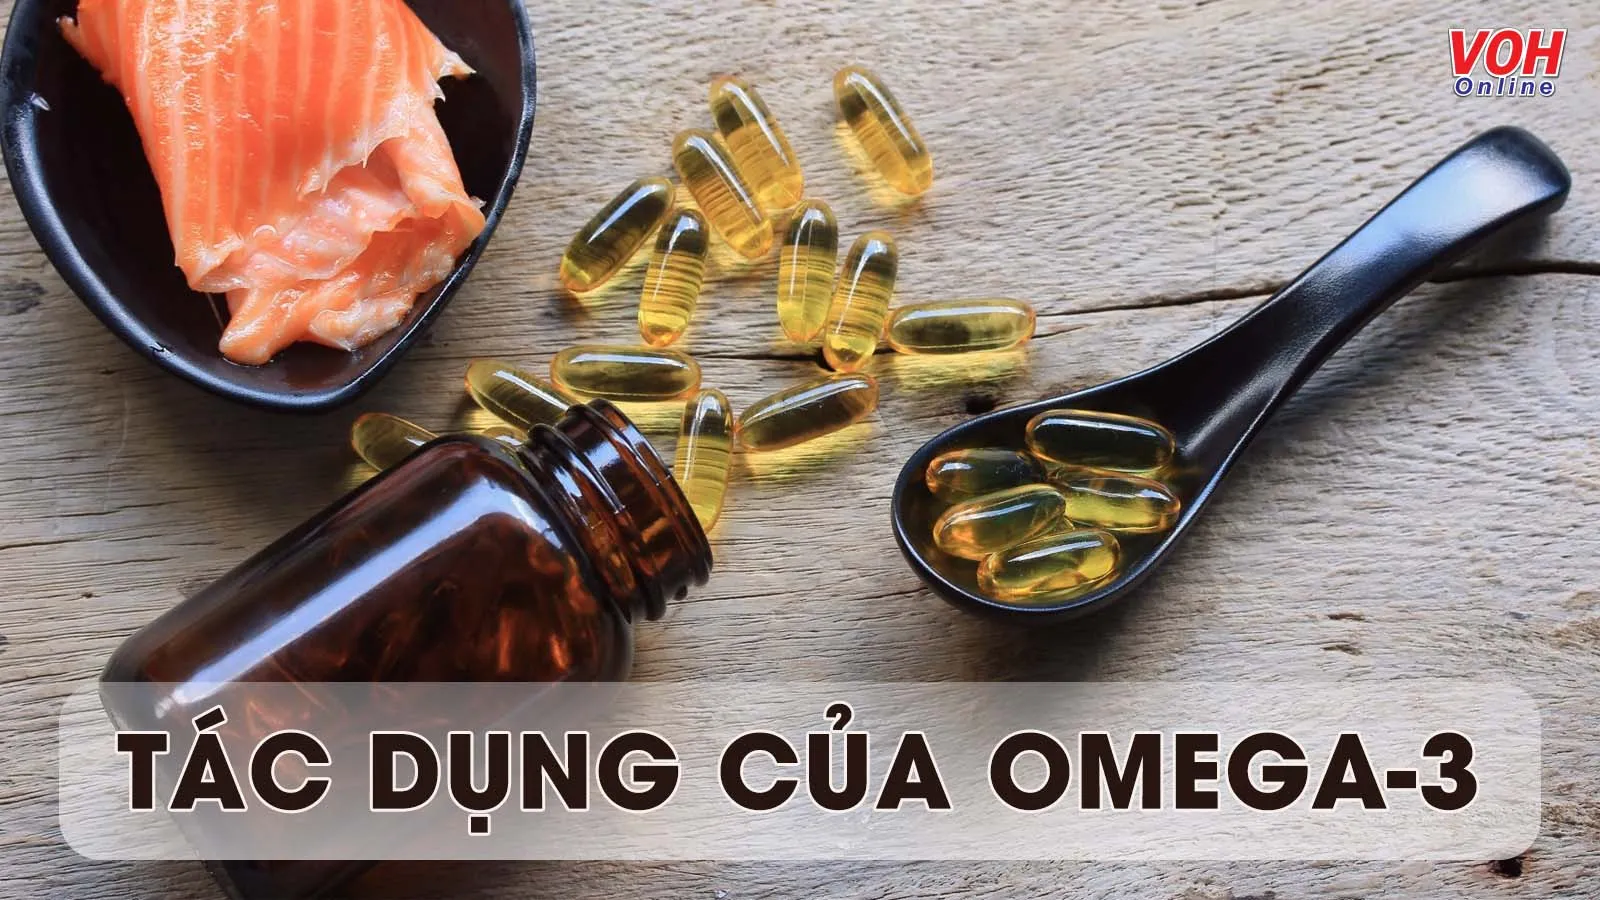 Tìm hiểu tác dụng của omega 3 đối với sức khỏe, làn da và cách bổ sung